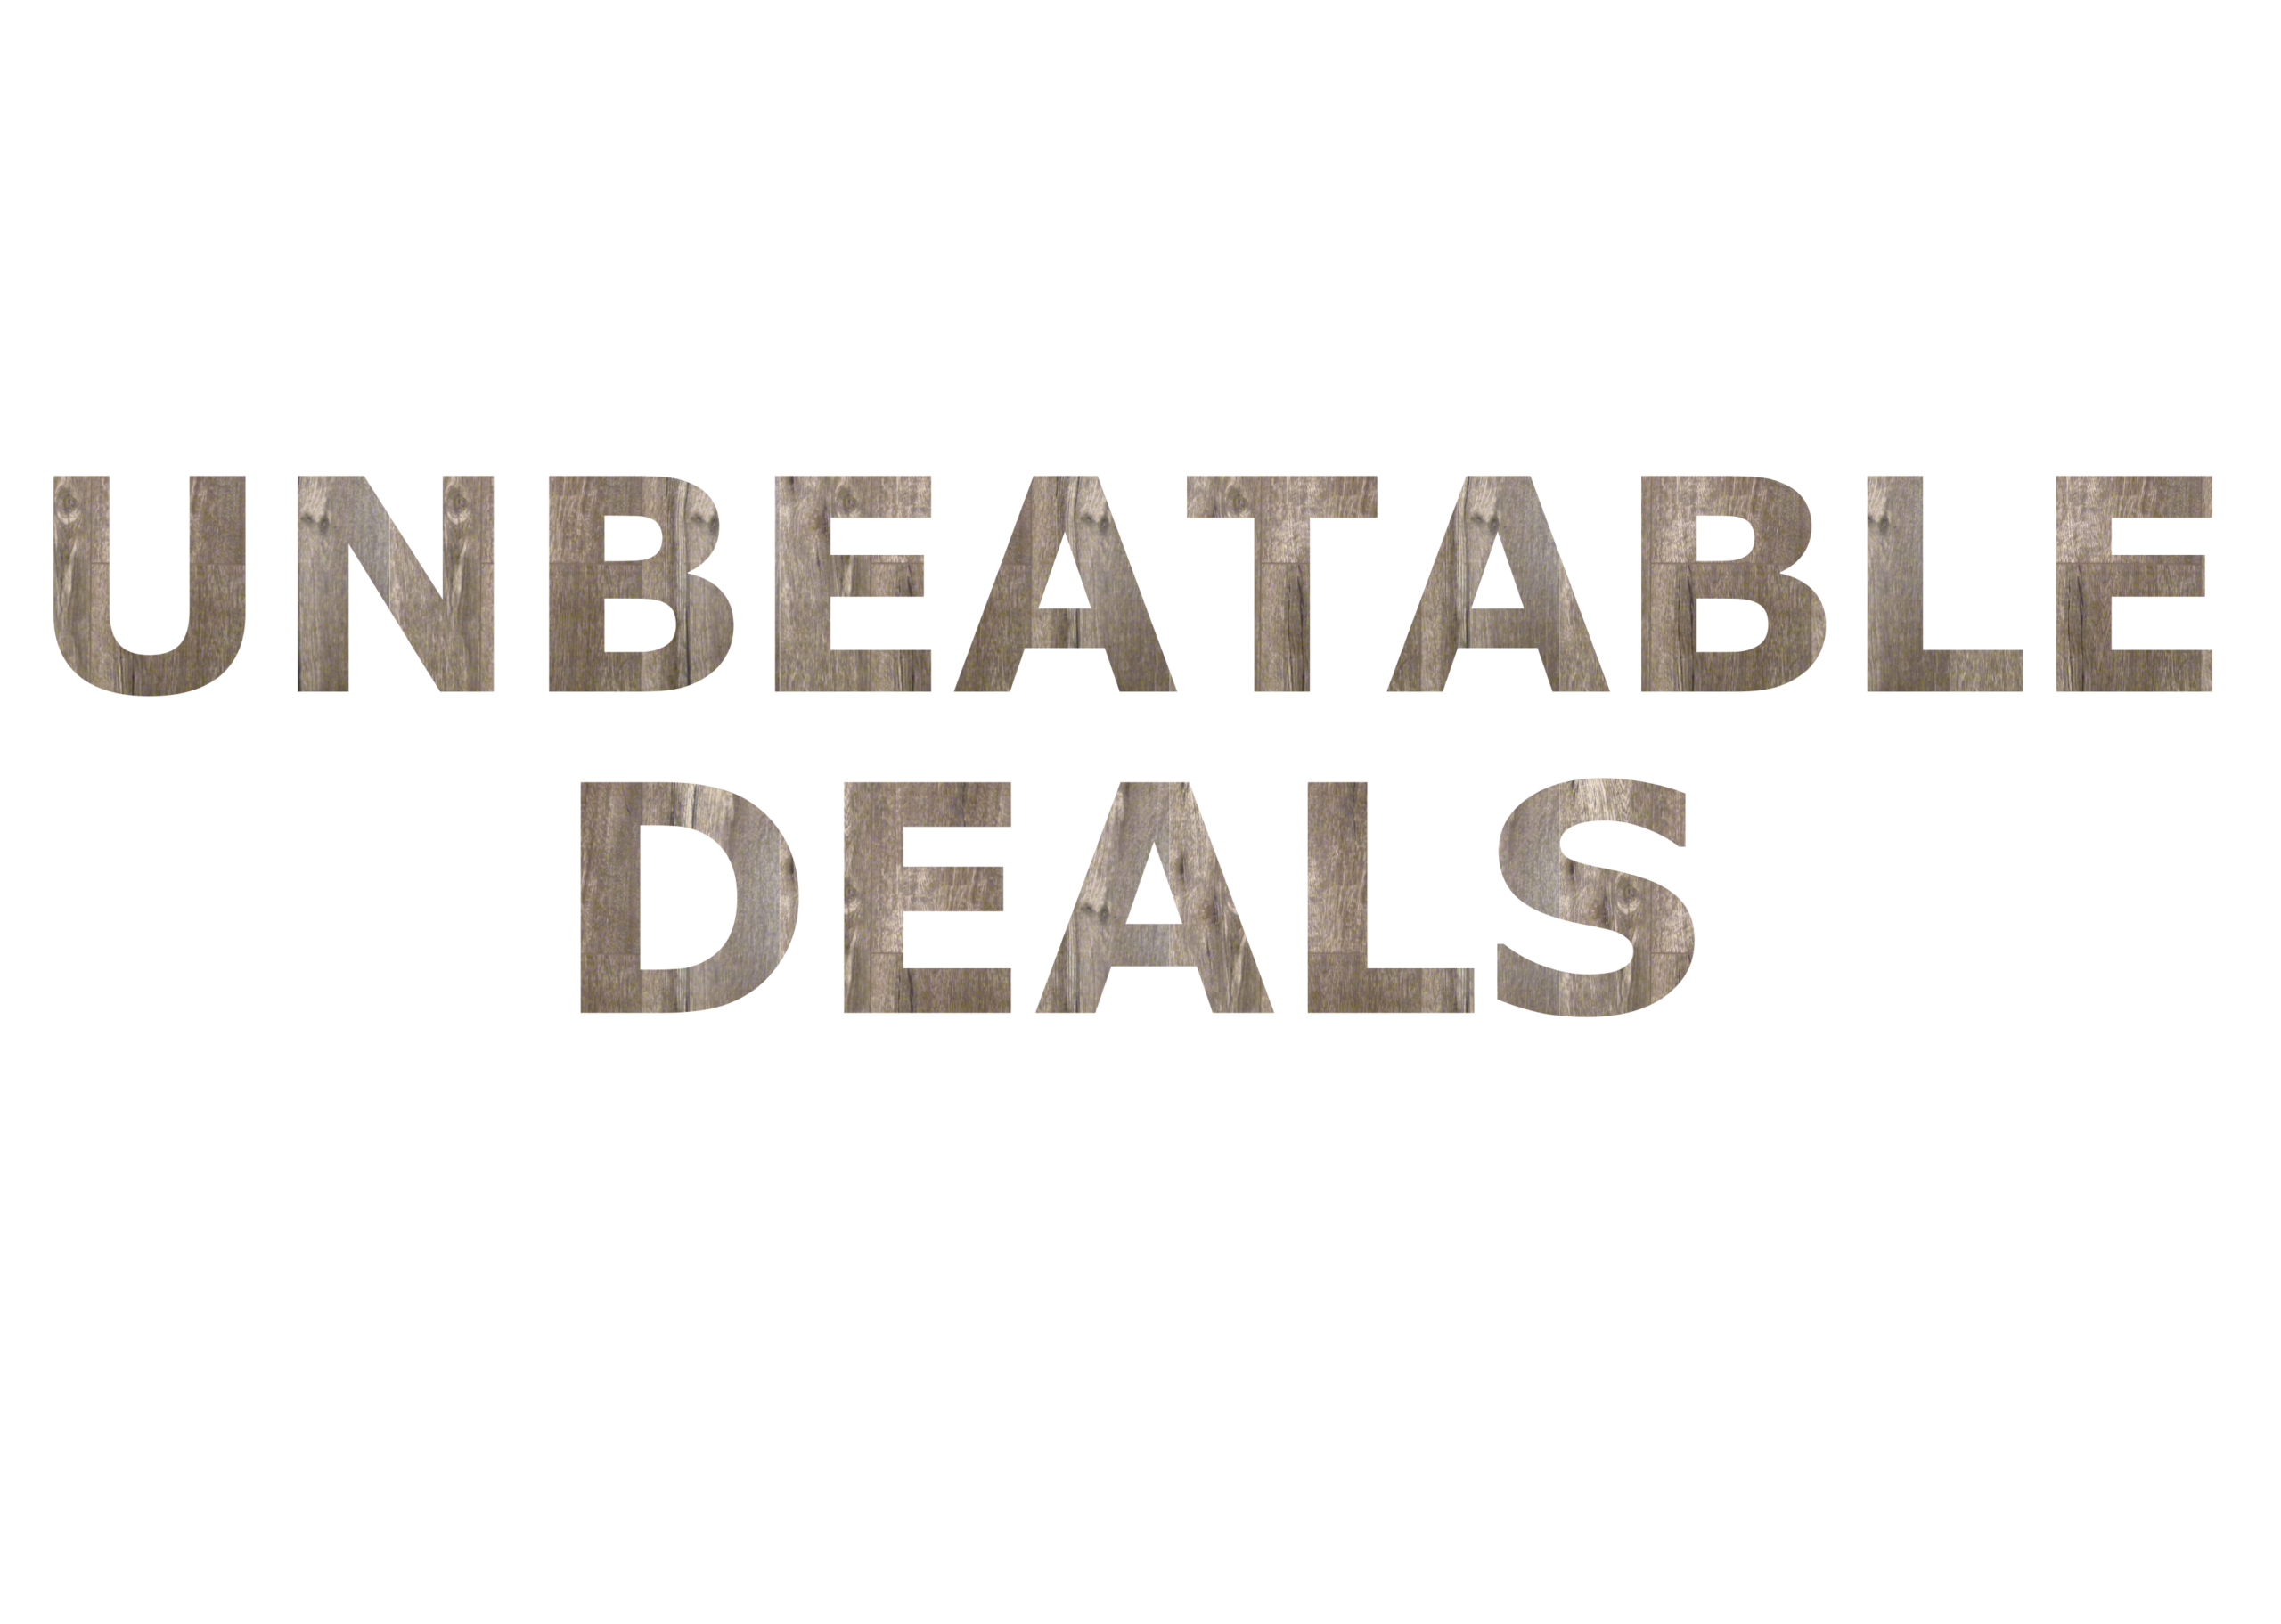 unbeatable deals image